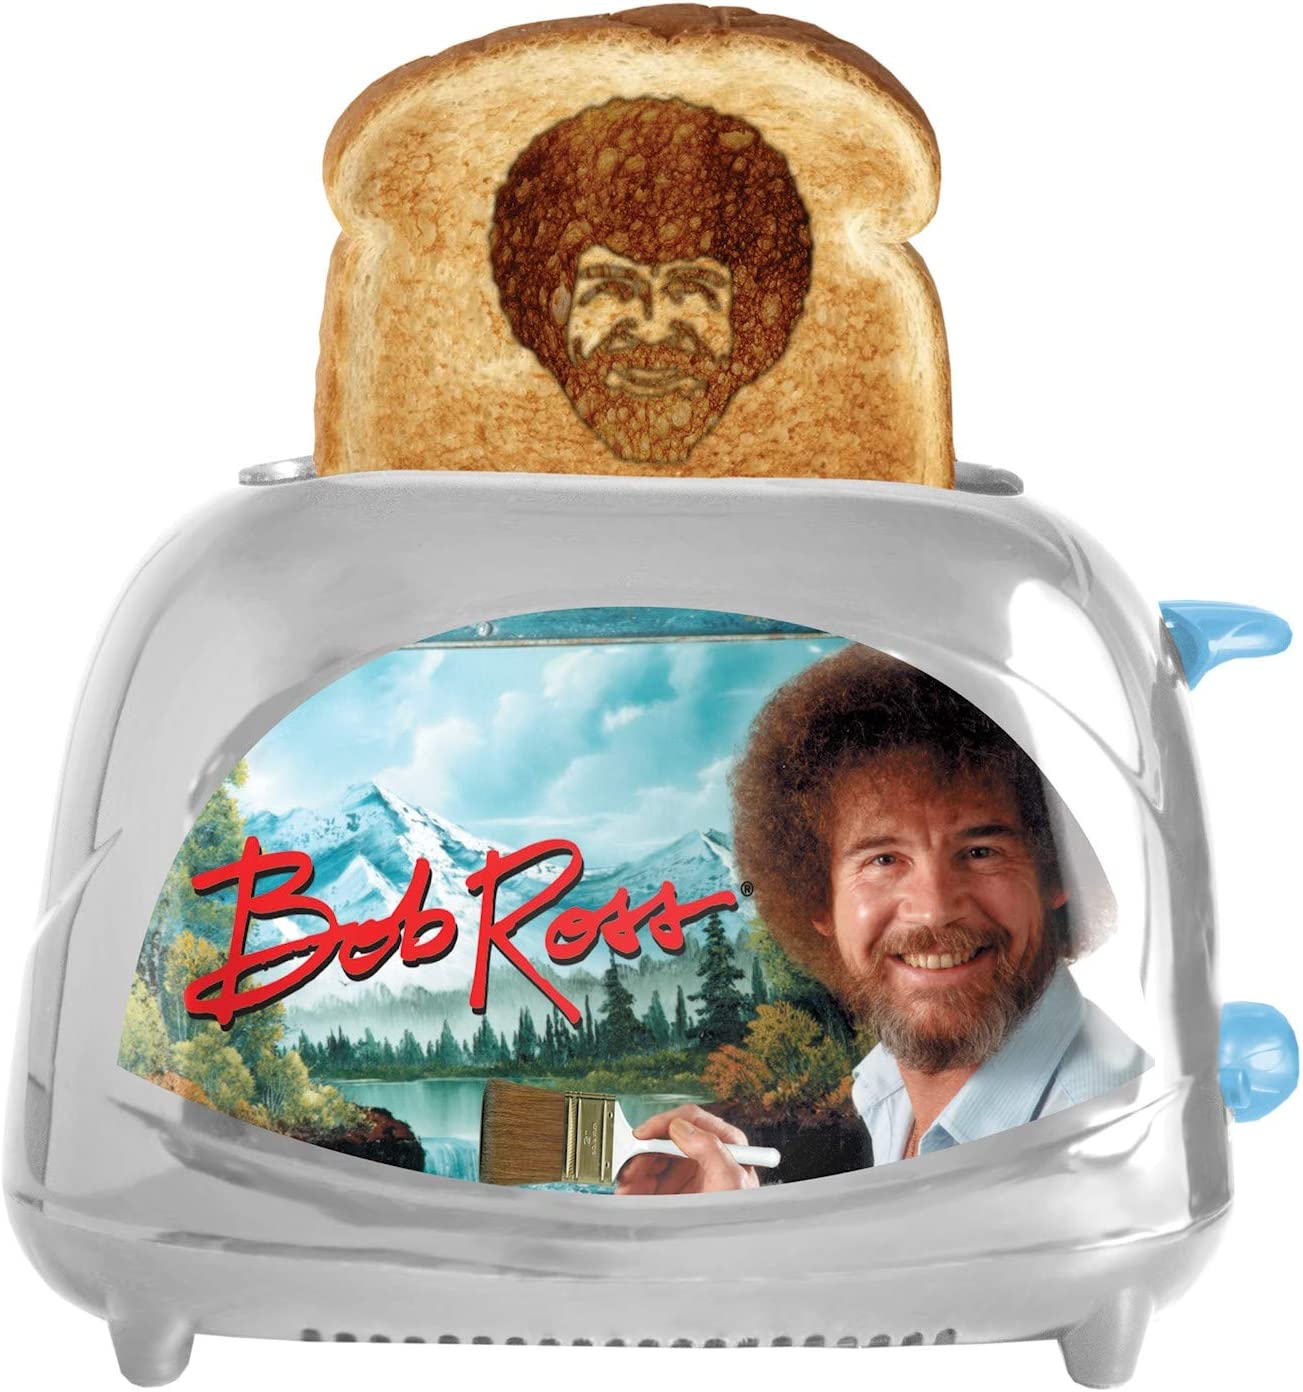 weird-gifts-toaster